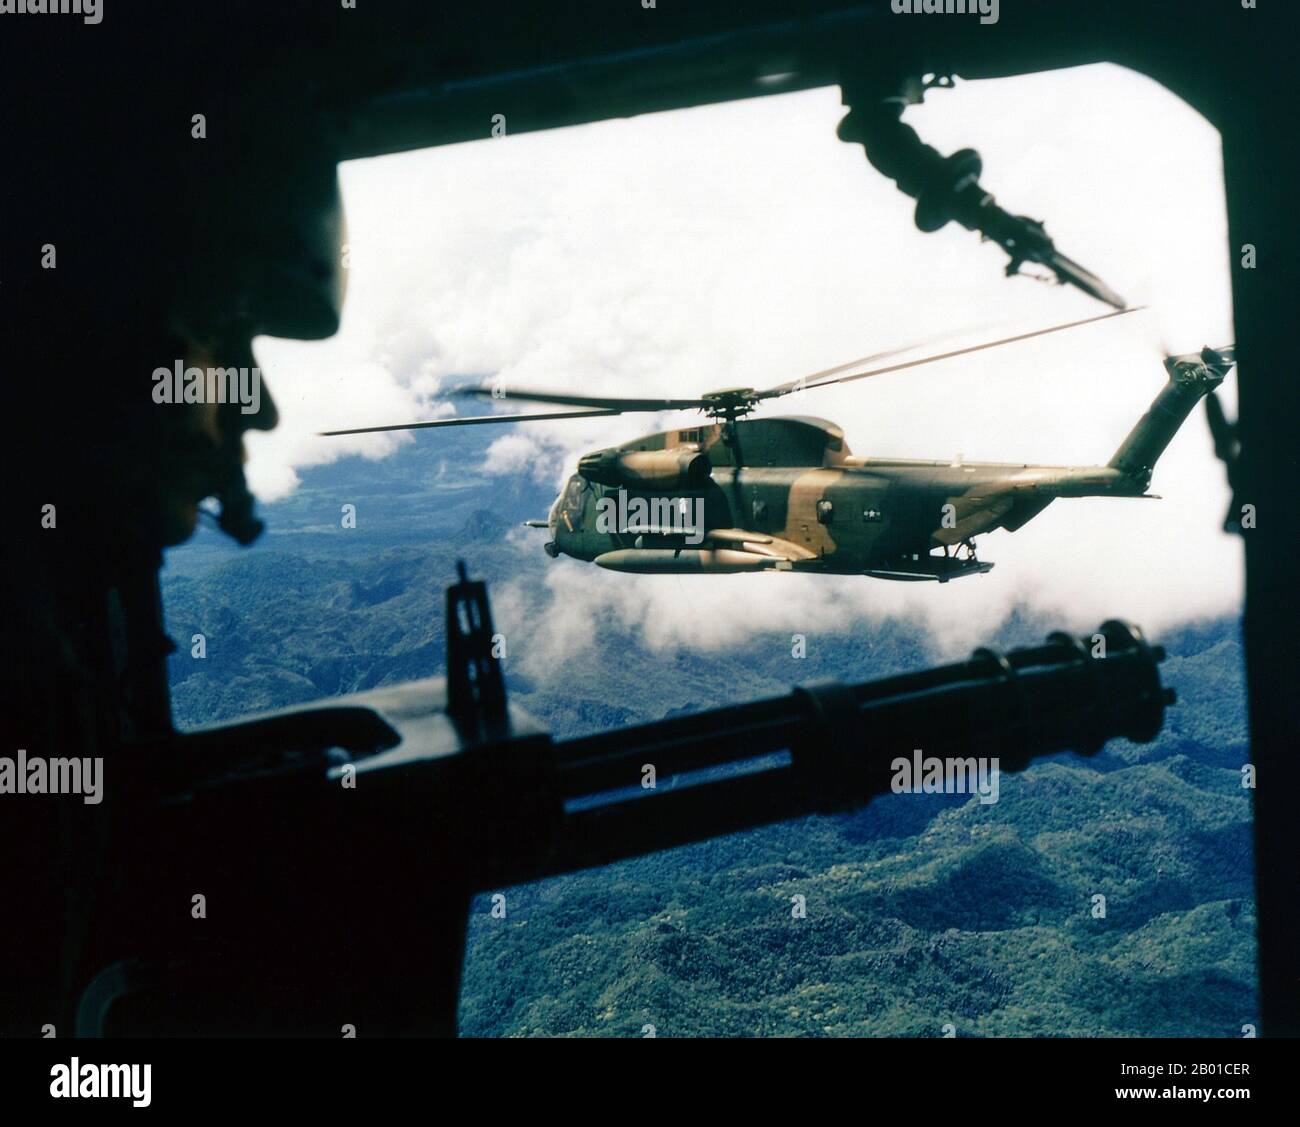 Vietnam: Ein Hubschrauber der US-Luftwaffe Sikorsky HH-53 Super Jolly Green Giant aus der Position des Schützen in einem Hubschrauber des 21. Special Operations Squadron, Vietnam. Foto von Ken Hackman (öffentlich zugänglich), Oktober 1972. Der zweite Indochina-Krieg, in Amerika als Vietnamkrieg bekannt, war ein militärischer Konflikt aus der Zeit des Kalten Krieges, der sich in Vietnam, Laos und Kambodscha vom 1. November 1955 bis zum Fall Saigons am 30. April 1975 ereignete. Dieser Krieg folgte dem ersten Indochina-Krieg und wurde zwischen Nord-Vietnam und der Regierung von Süd-Vietnam, unterstützt von den Vereinigten Staaten, geführt. Stockfoto